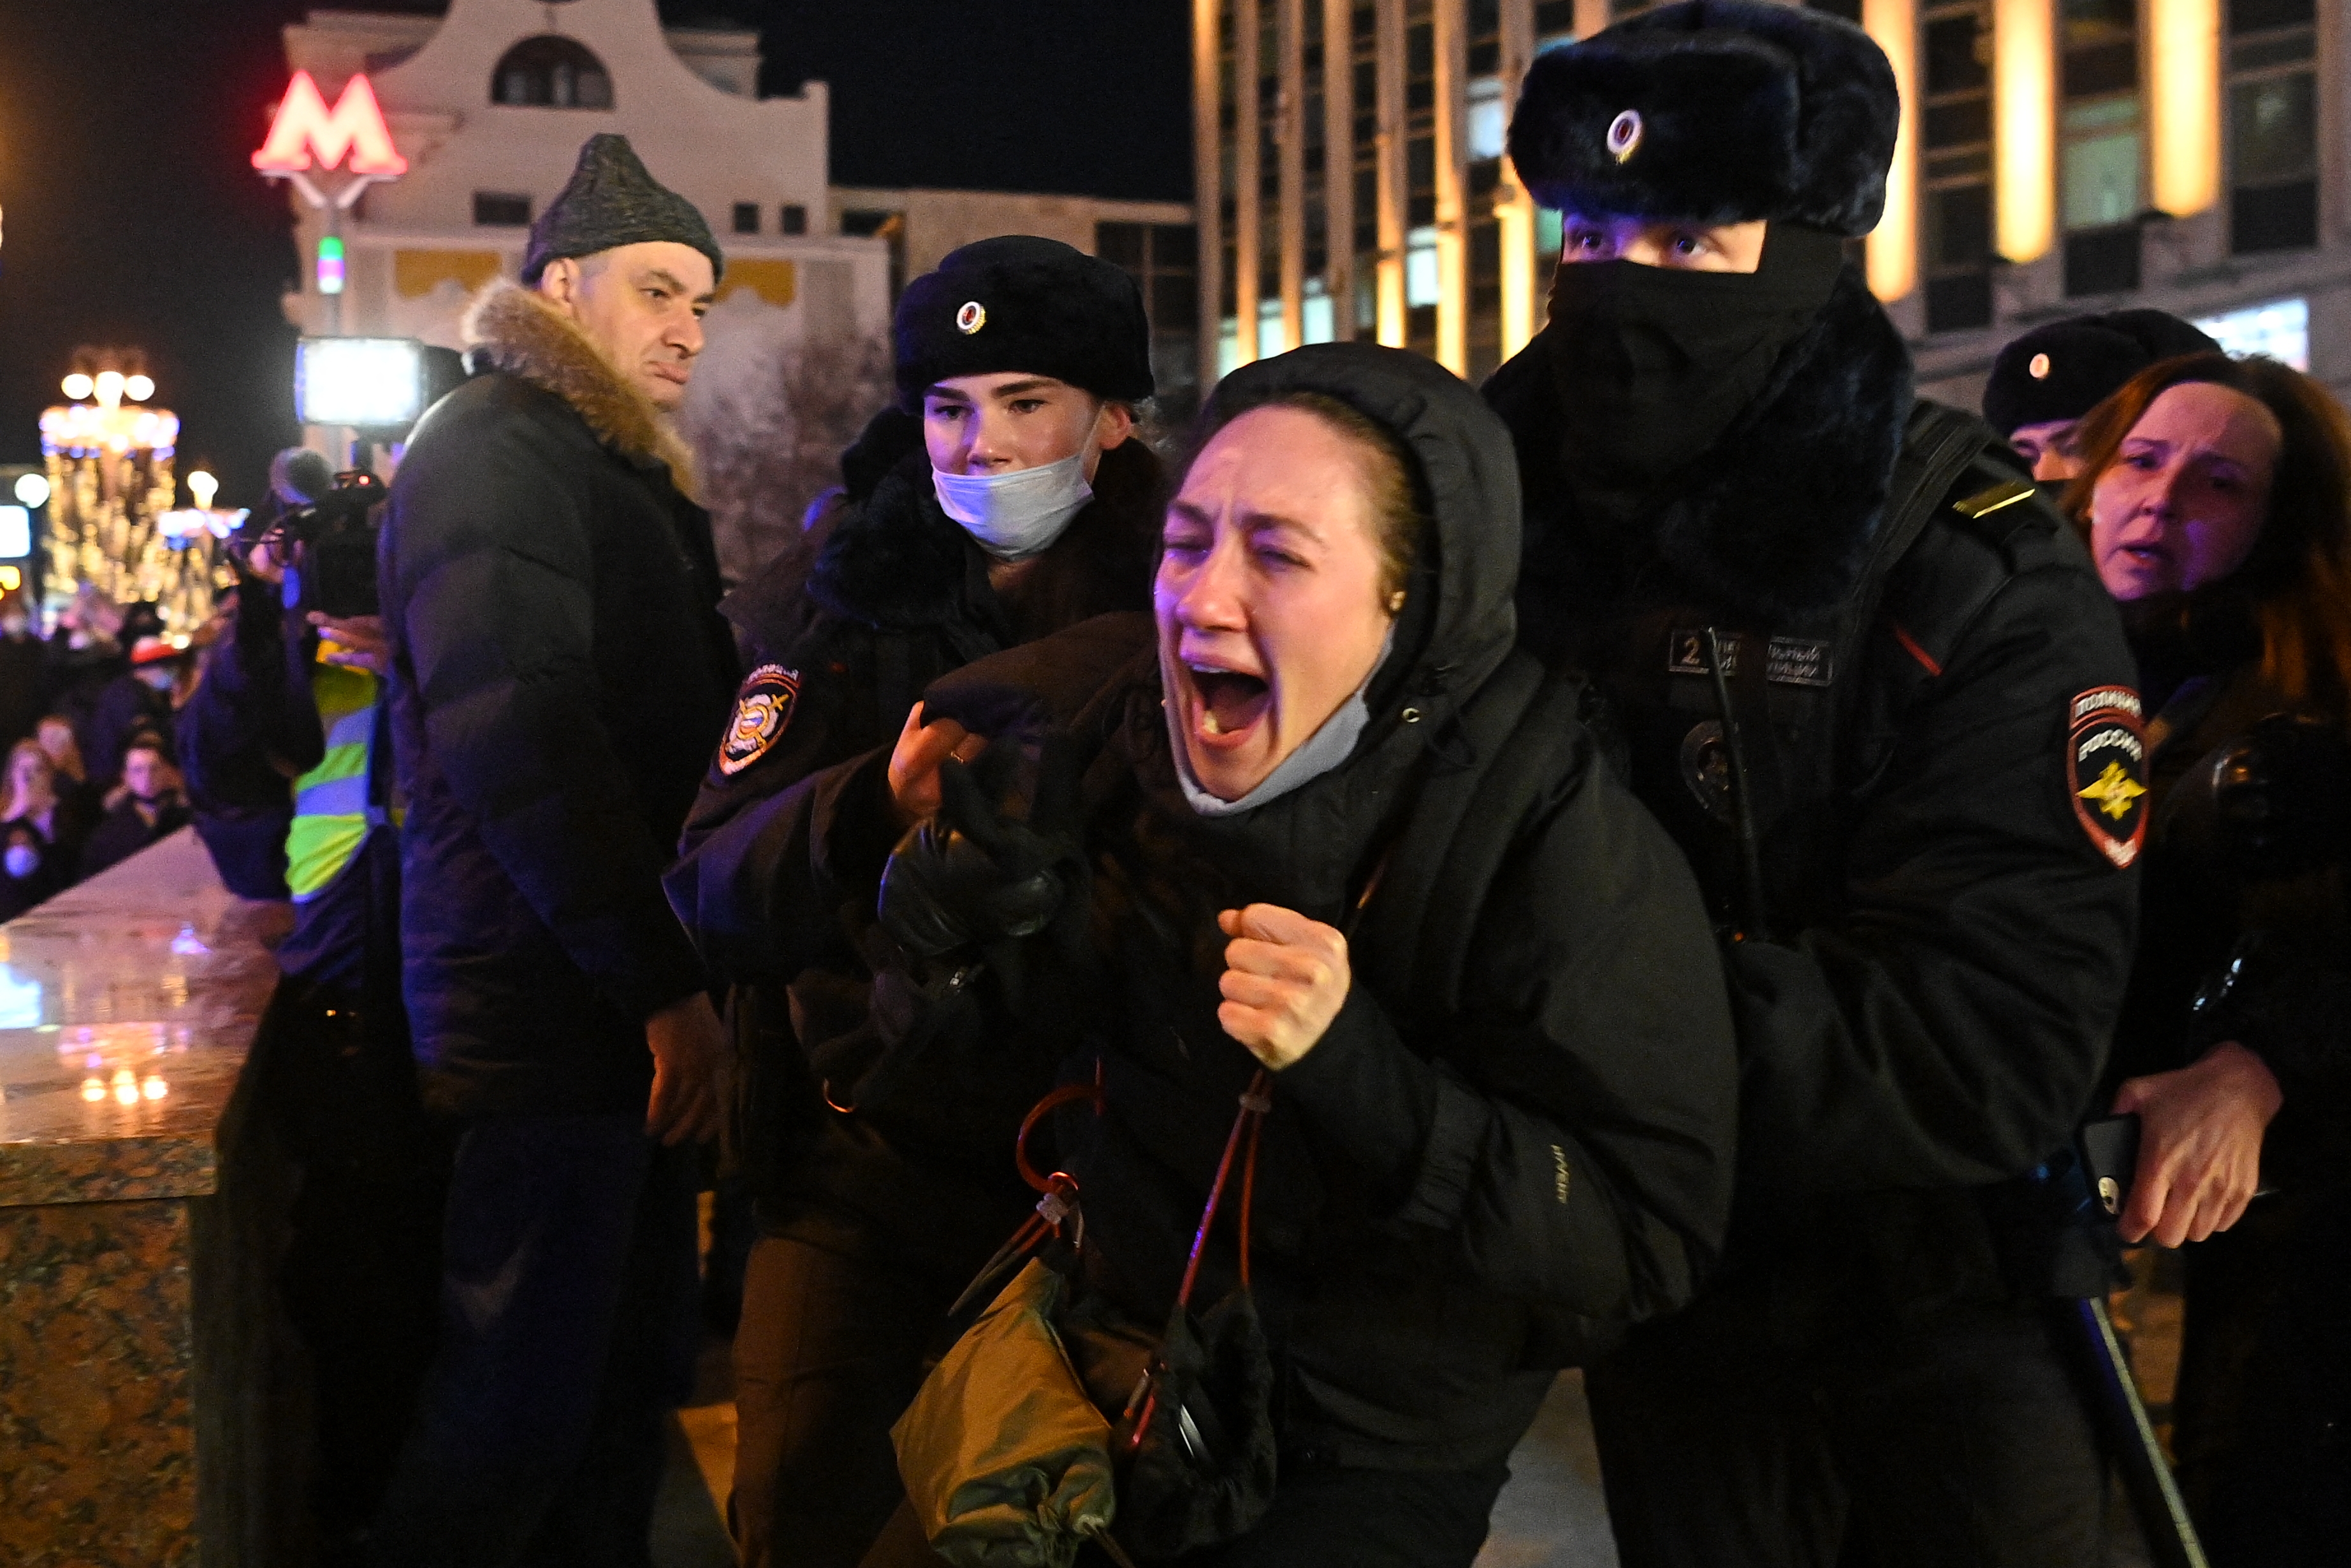 1700 felett az őrizetbe vett háborúellenes tüntetők száma Oroszországban